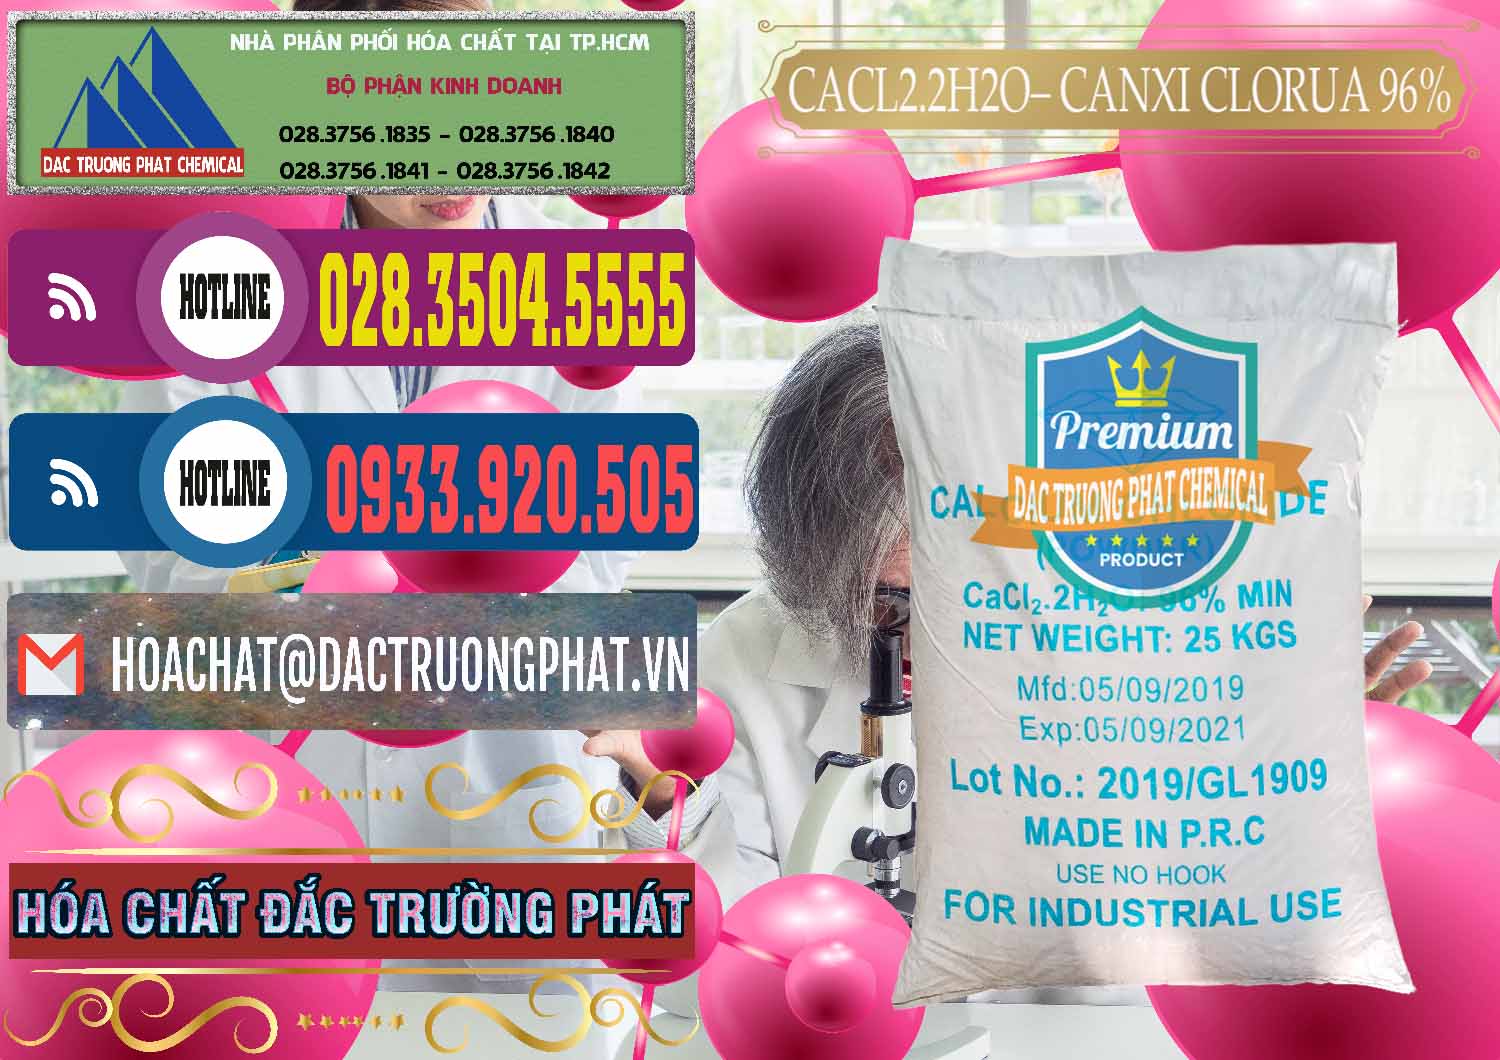 Chuyên cung cấp - bán CaCl2 – Canxi Clorua 96% Logo Kim Cương Trung Quốc China - 0040 - Nơi chuyên bán ( cung cấp ) hóa chất tại TP.HCM - muabanhoachat.com.vn